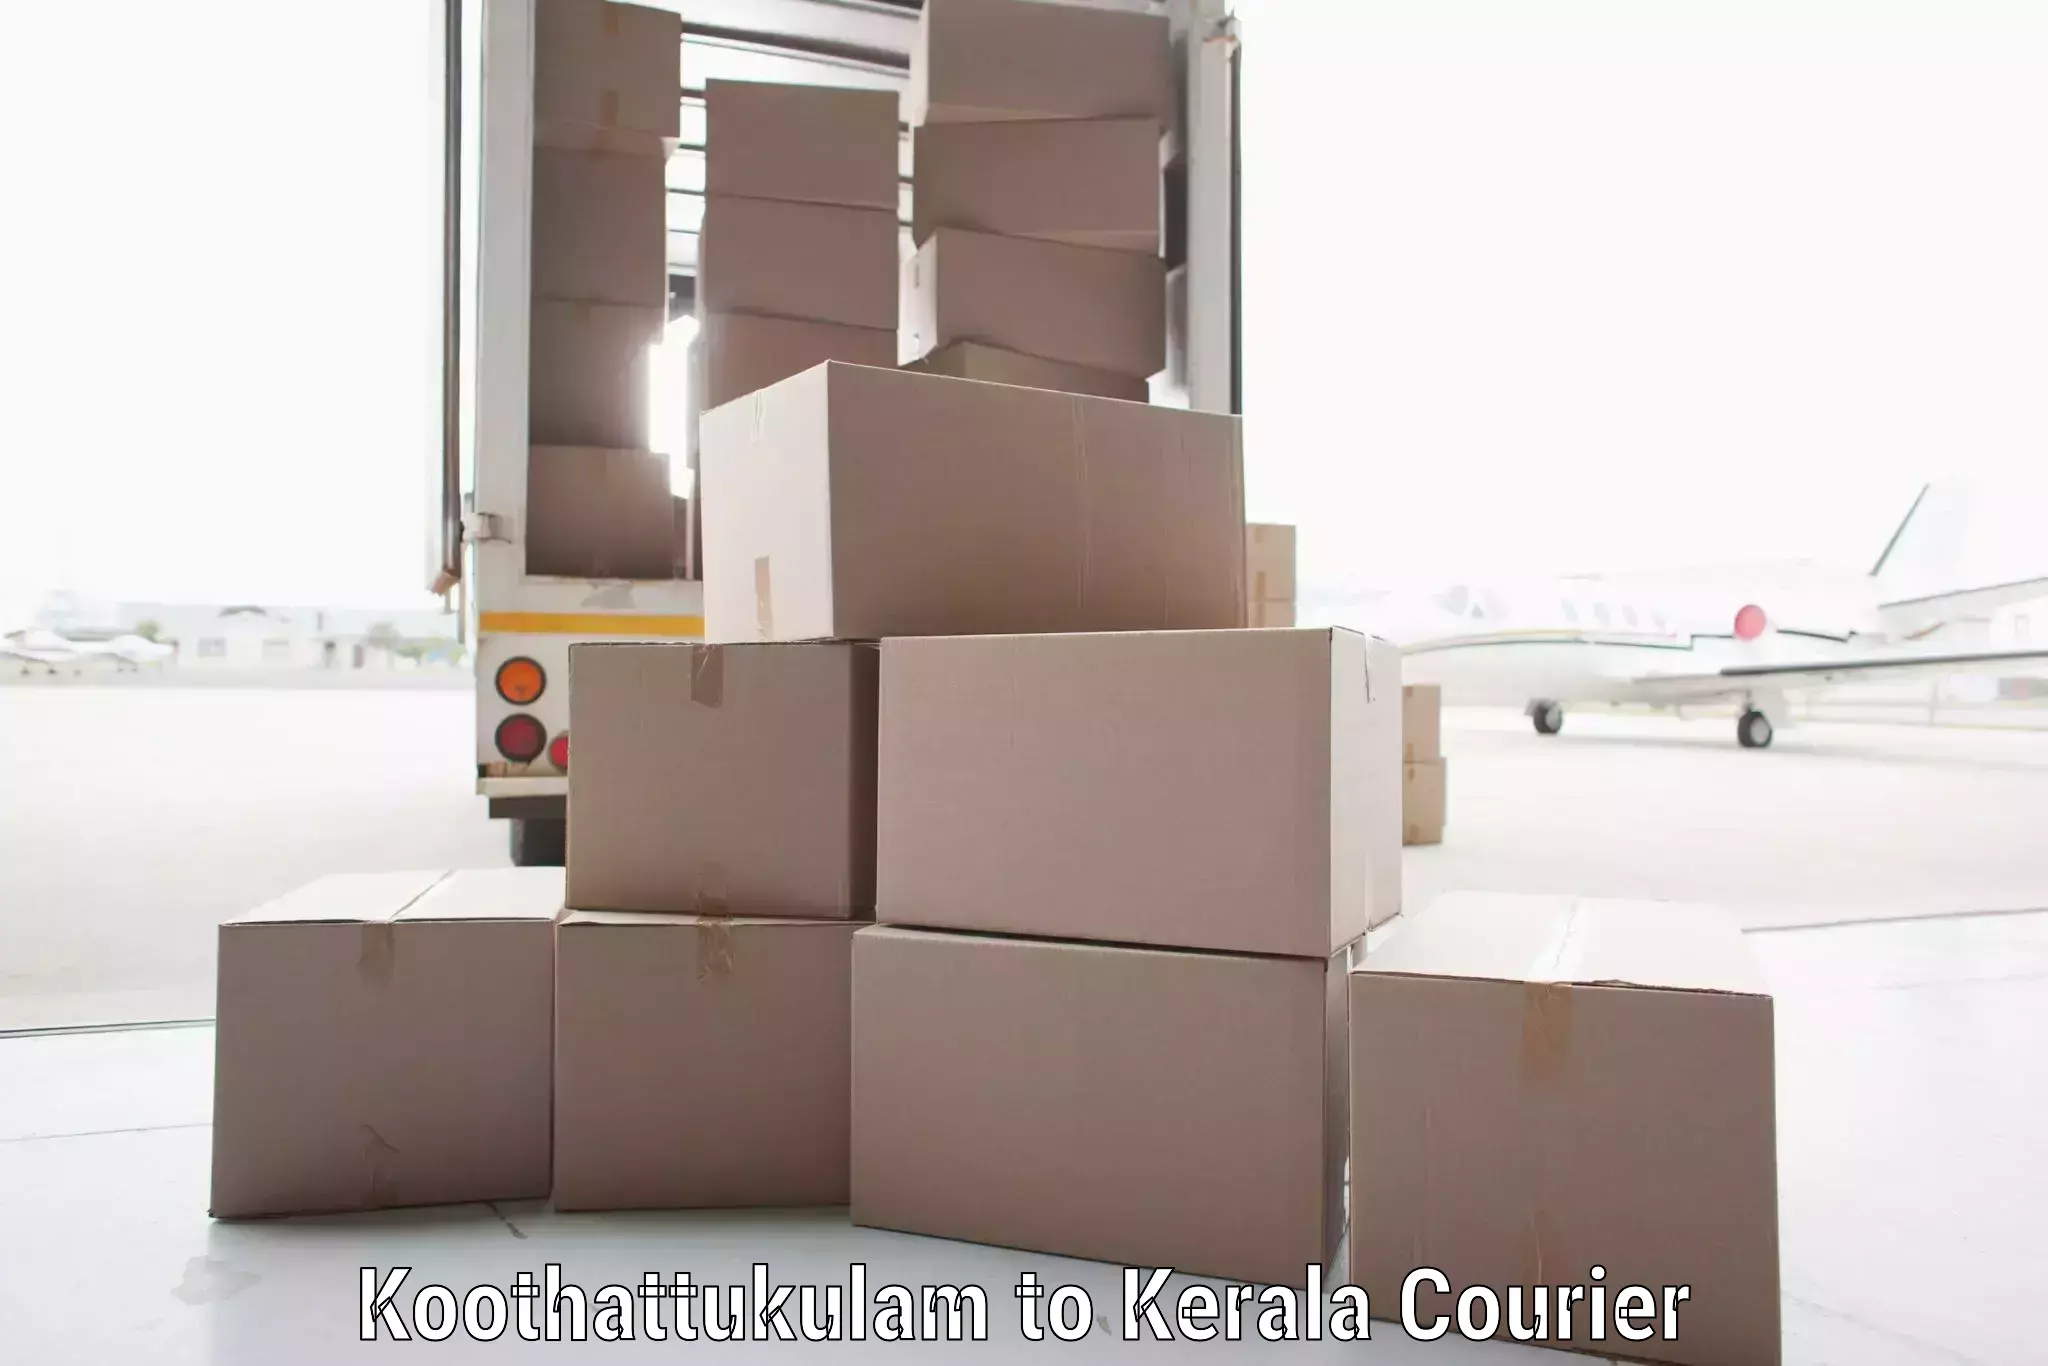 Customizable shipping options Koothattukulam to IIT Palakkad